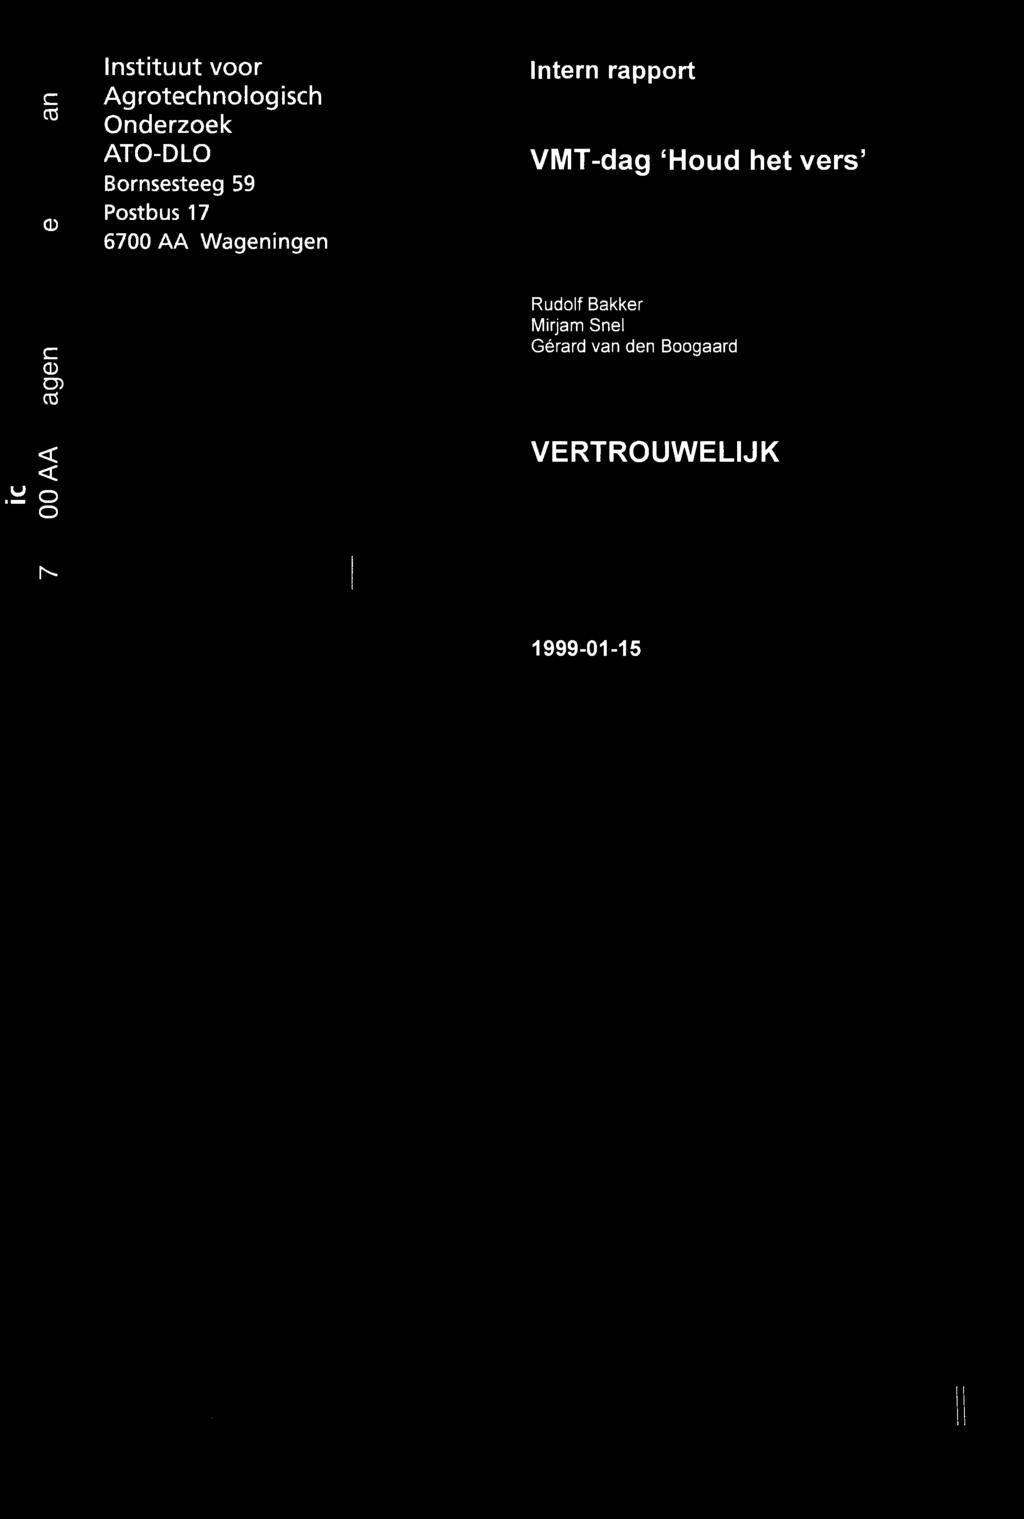 VMT-dag 'Houd het vers' c CD O) CO Rudolf Bakker Mirjam Snel